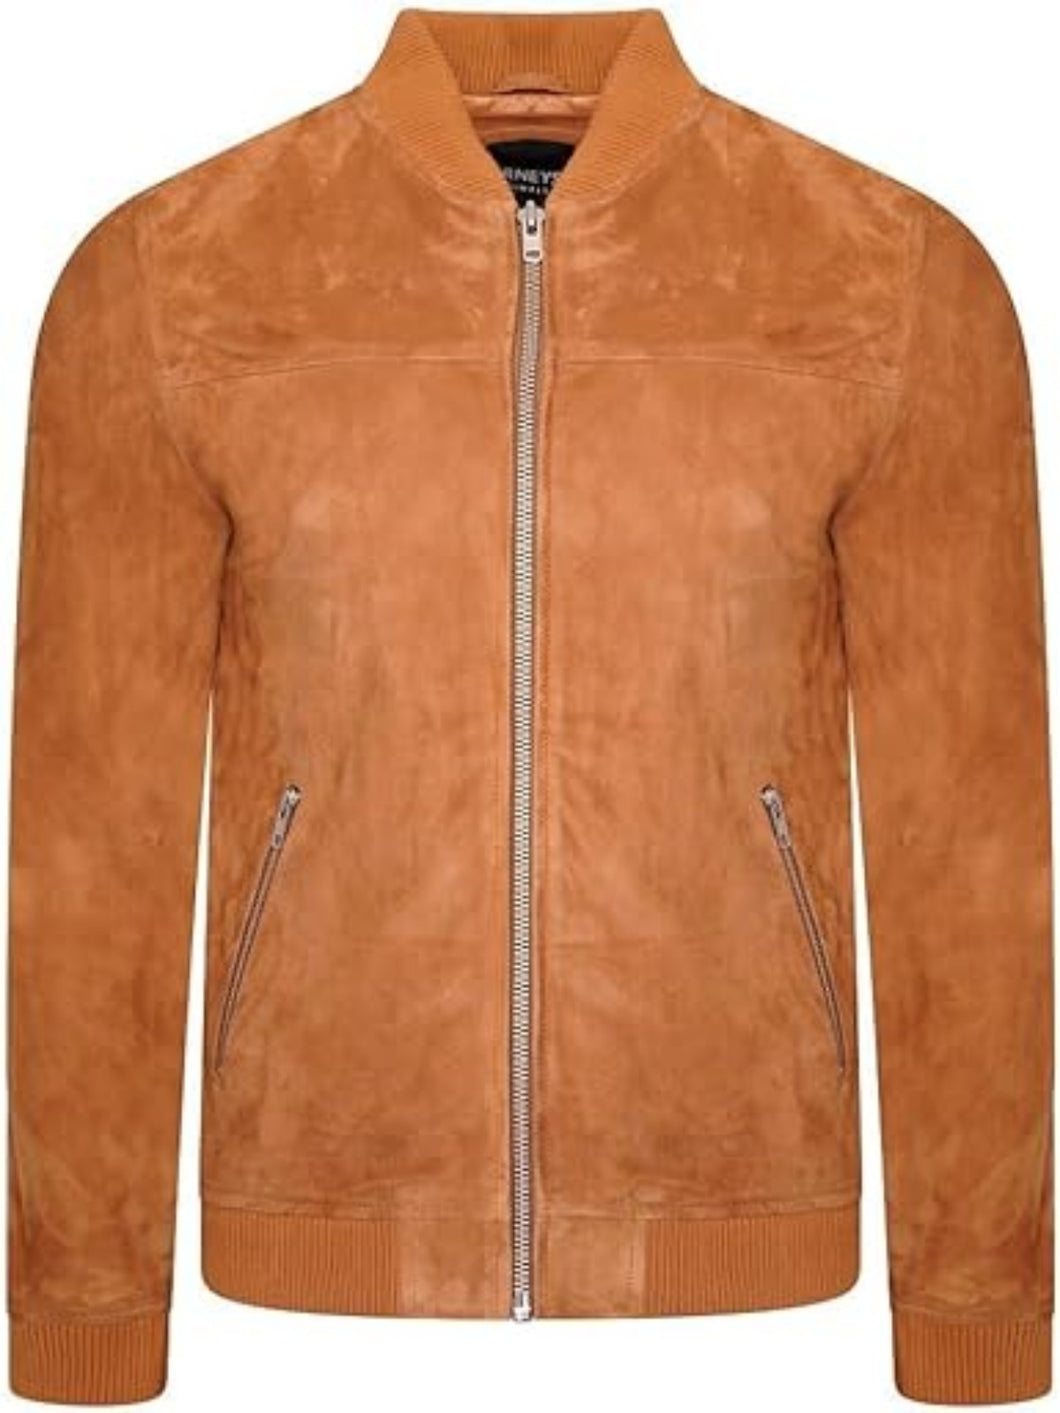 Men's Simple Brown Jacket